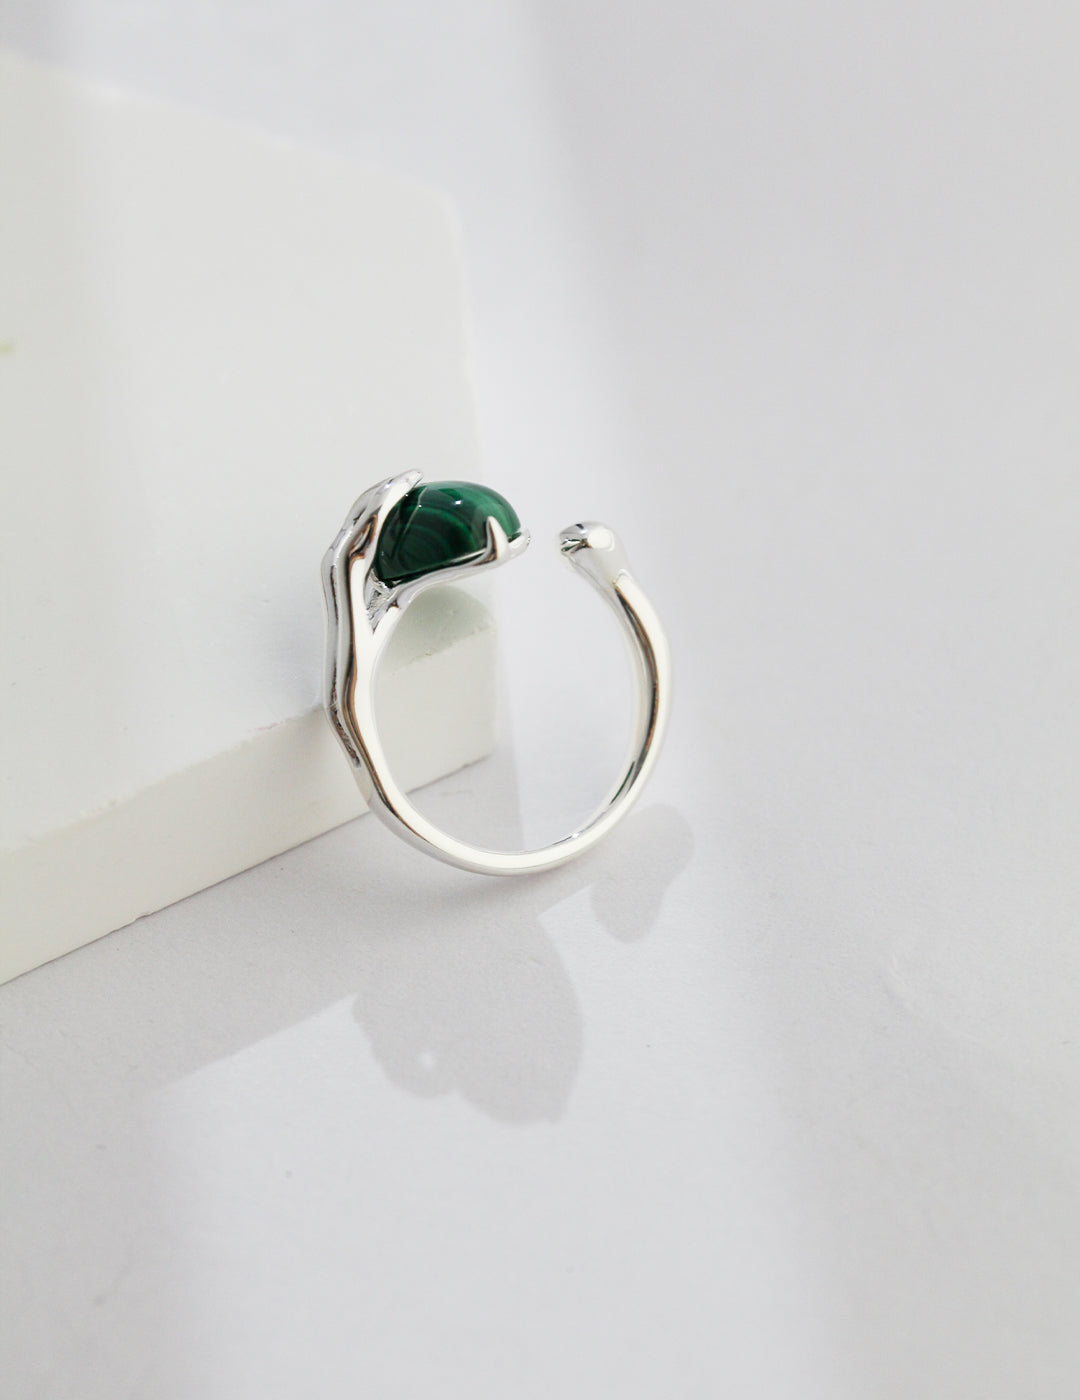 Elegant S925 Sterling Silver Turquoise Ring - Adjustable Vintage-Inspired Design